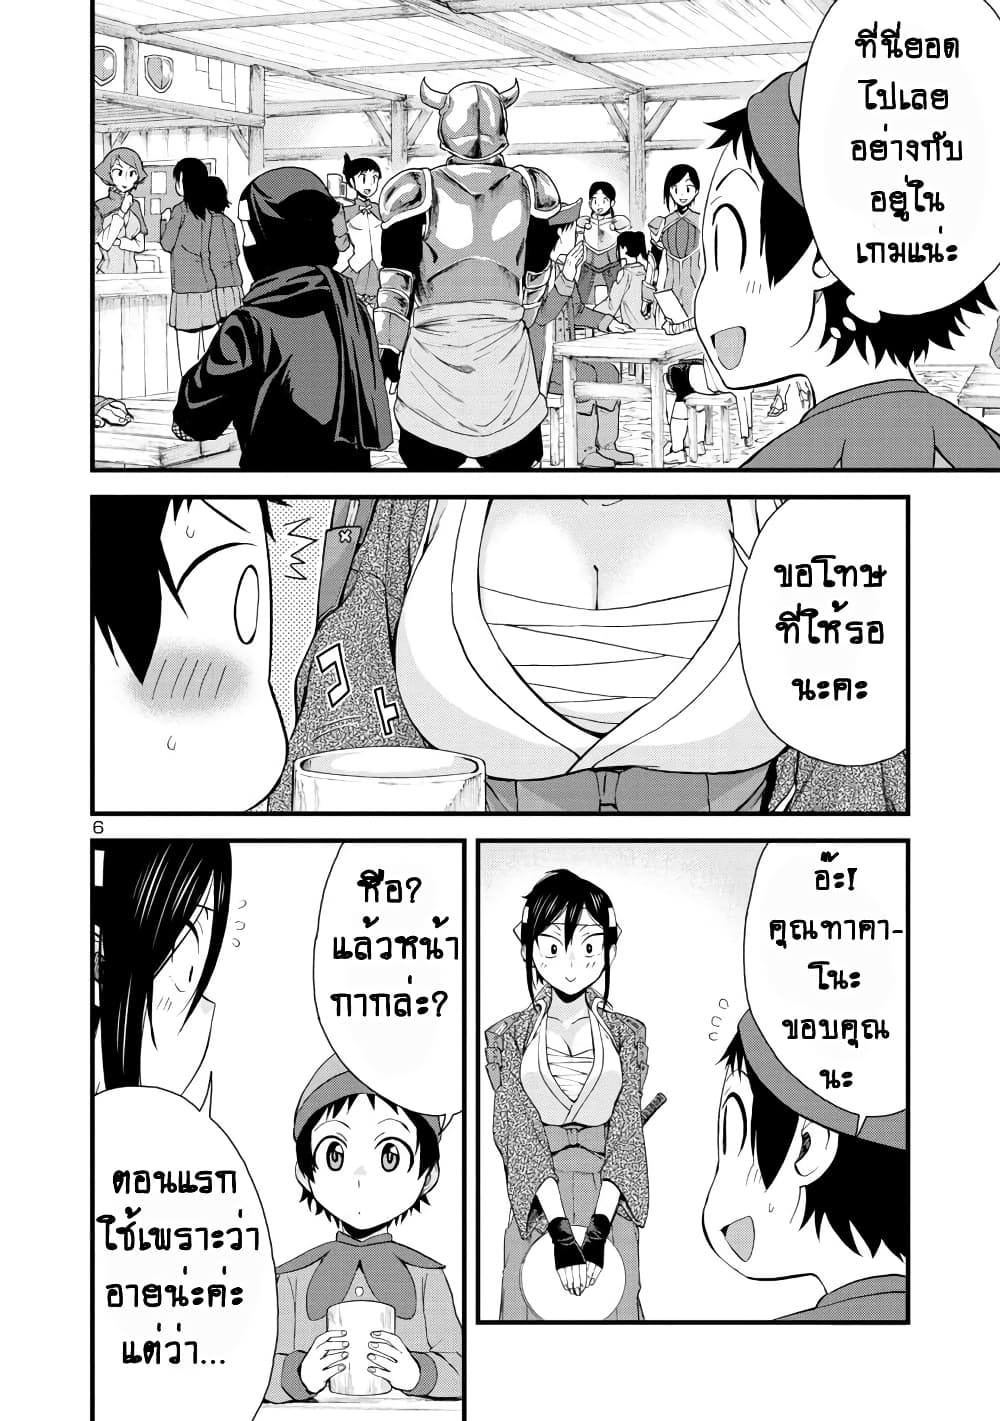 Hitomi-chan Is Shy With Strangers วันๆของน้องฮิโตมิก็เป็นแบบนี้แหล่ะ 34-34